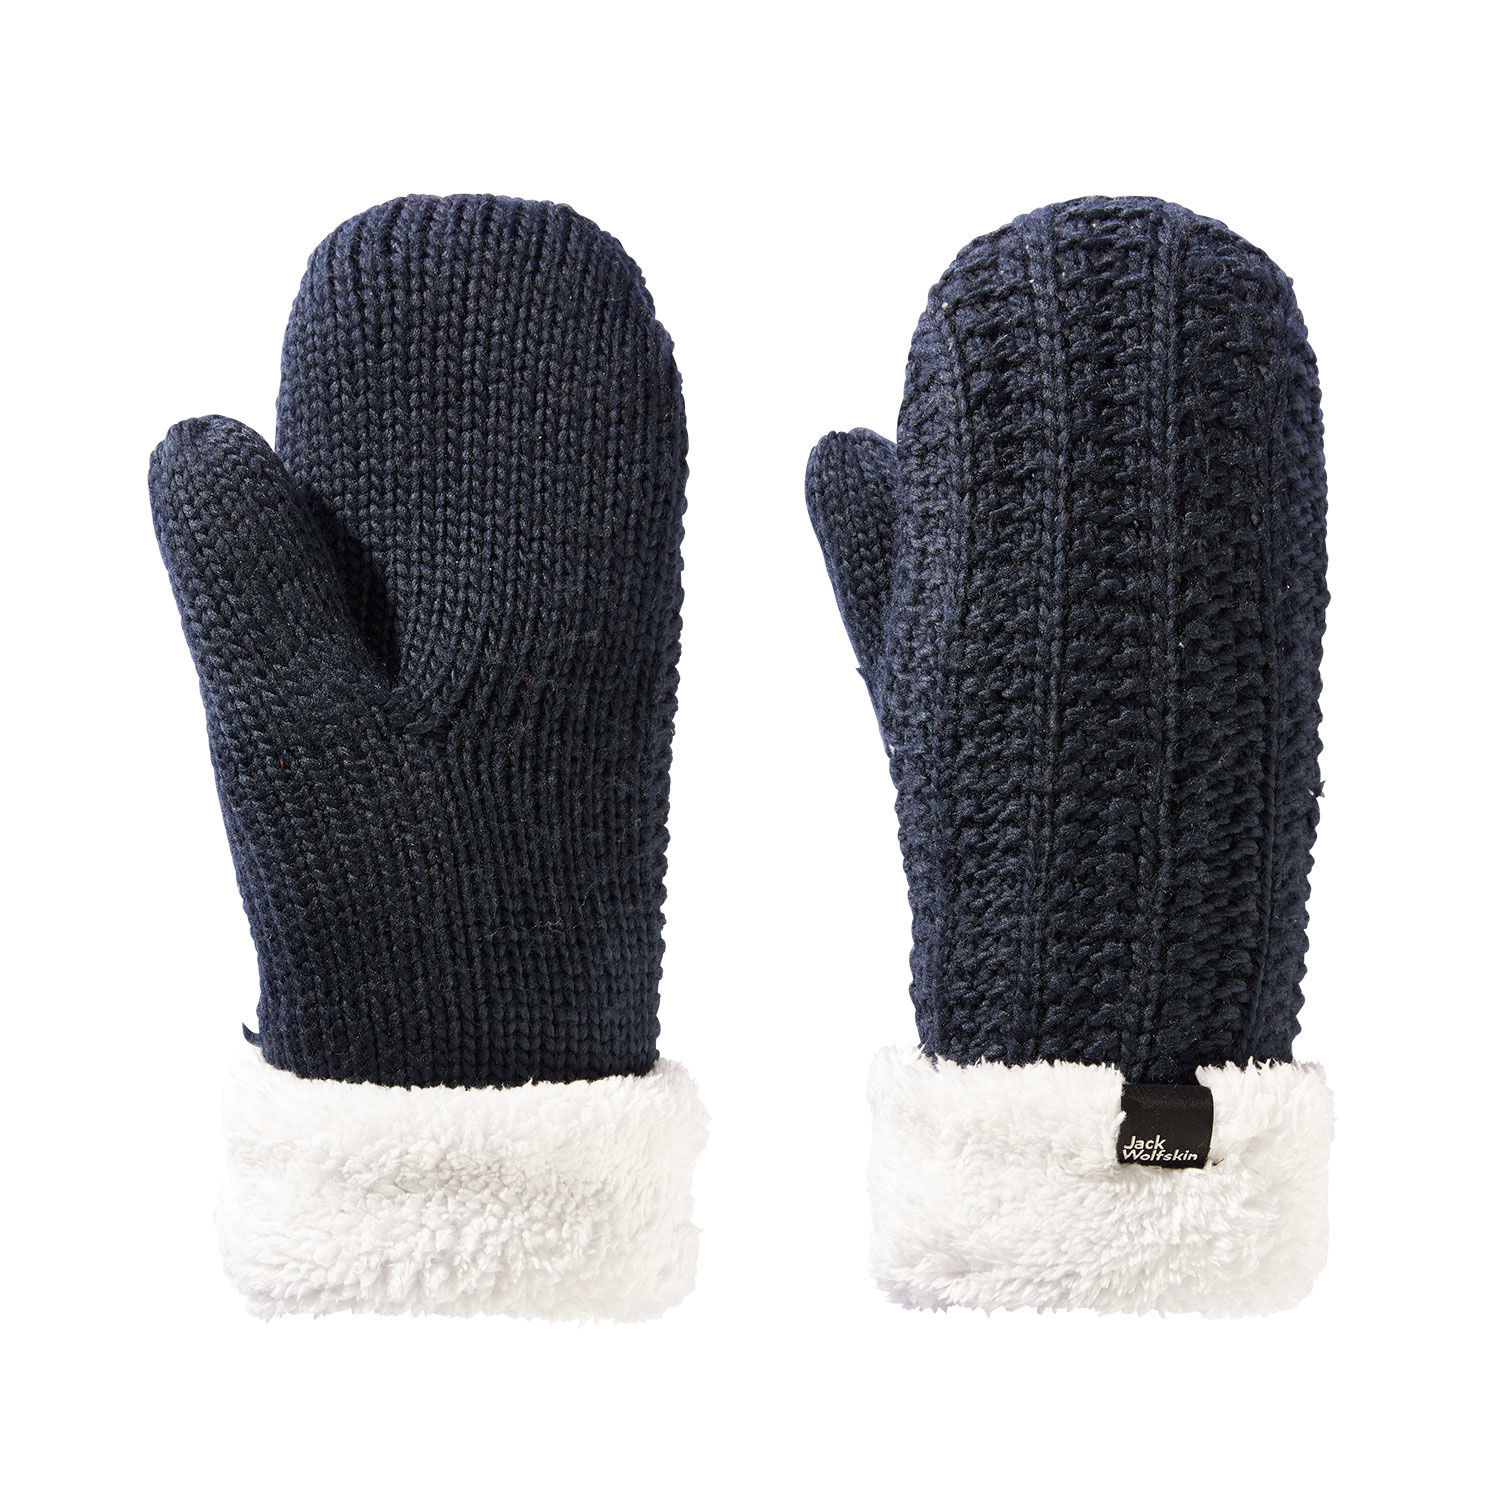 Jack Wolfskin Handschuhe highloft knit günstig kaufen ⋆ Lehner Versand